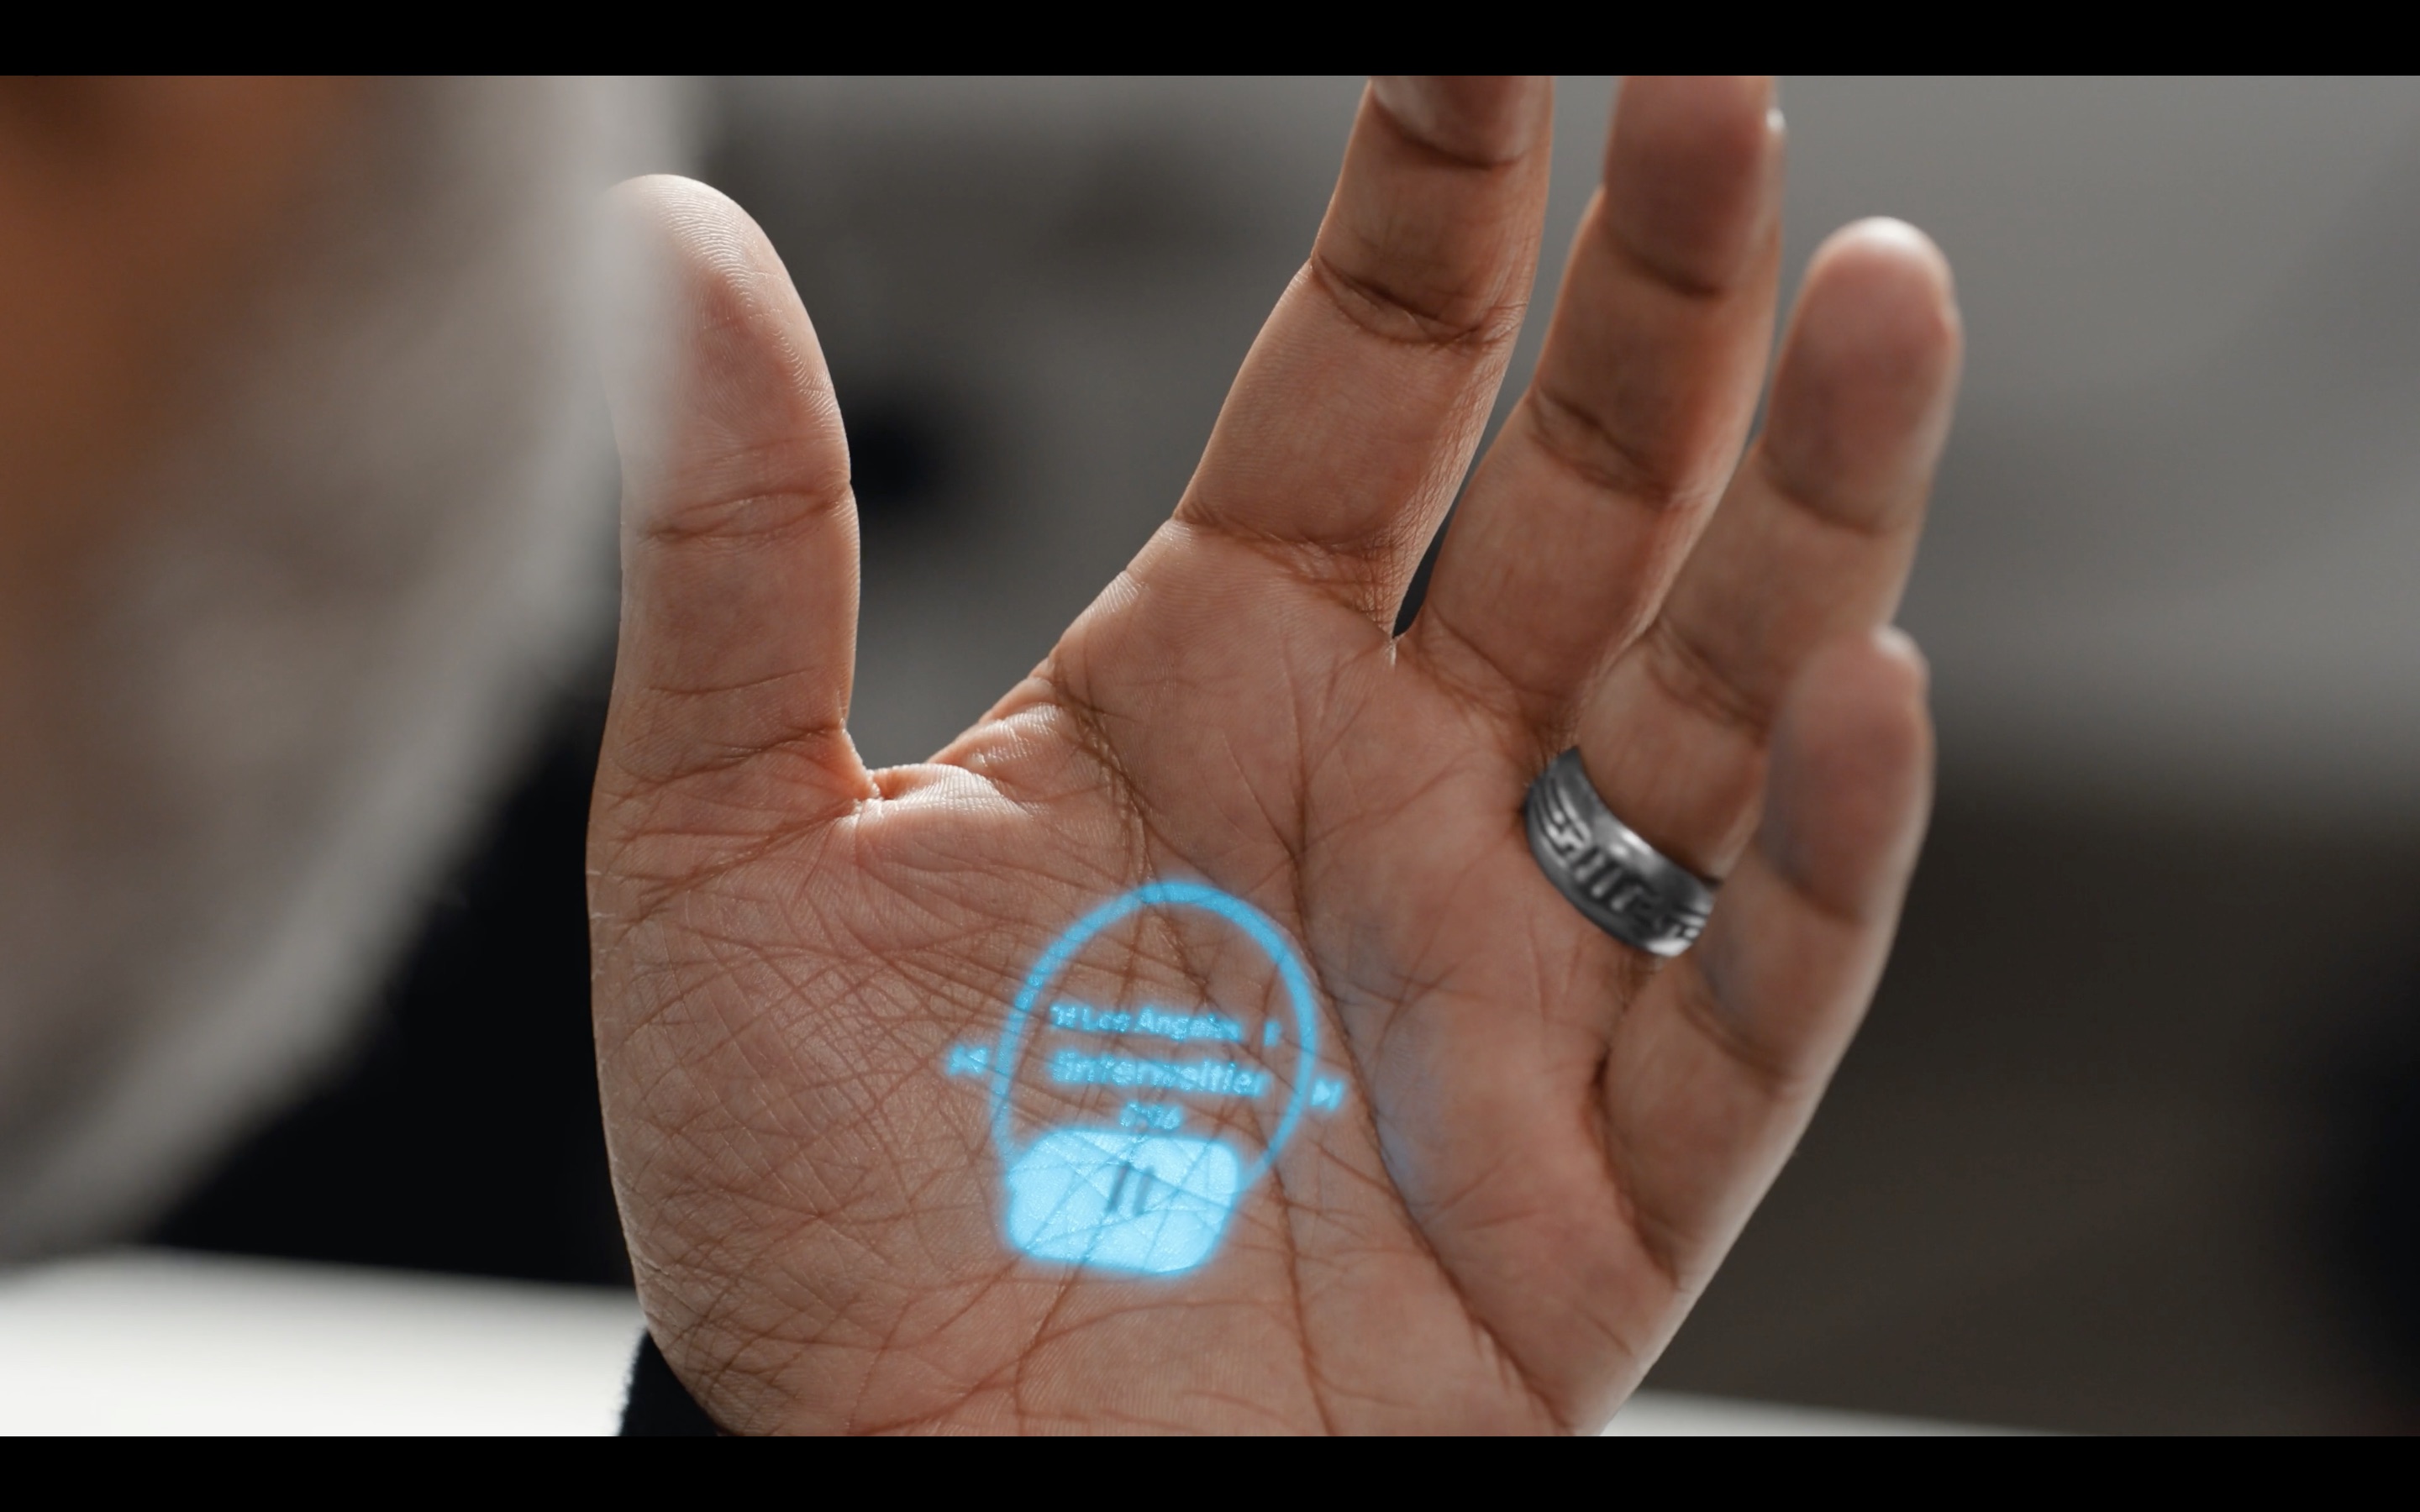 Appleの元社員らによるHumane、手のひらに画面投影できるウェアラブルAIデバイス「Ai Pin」発表